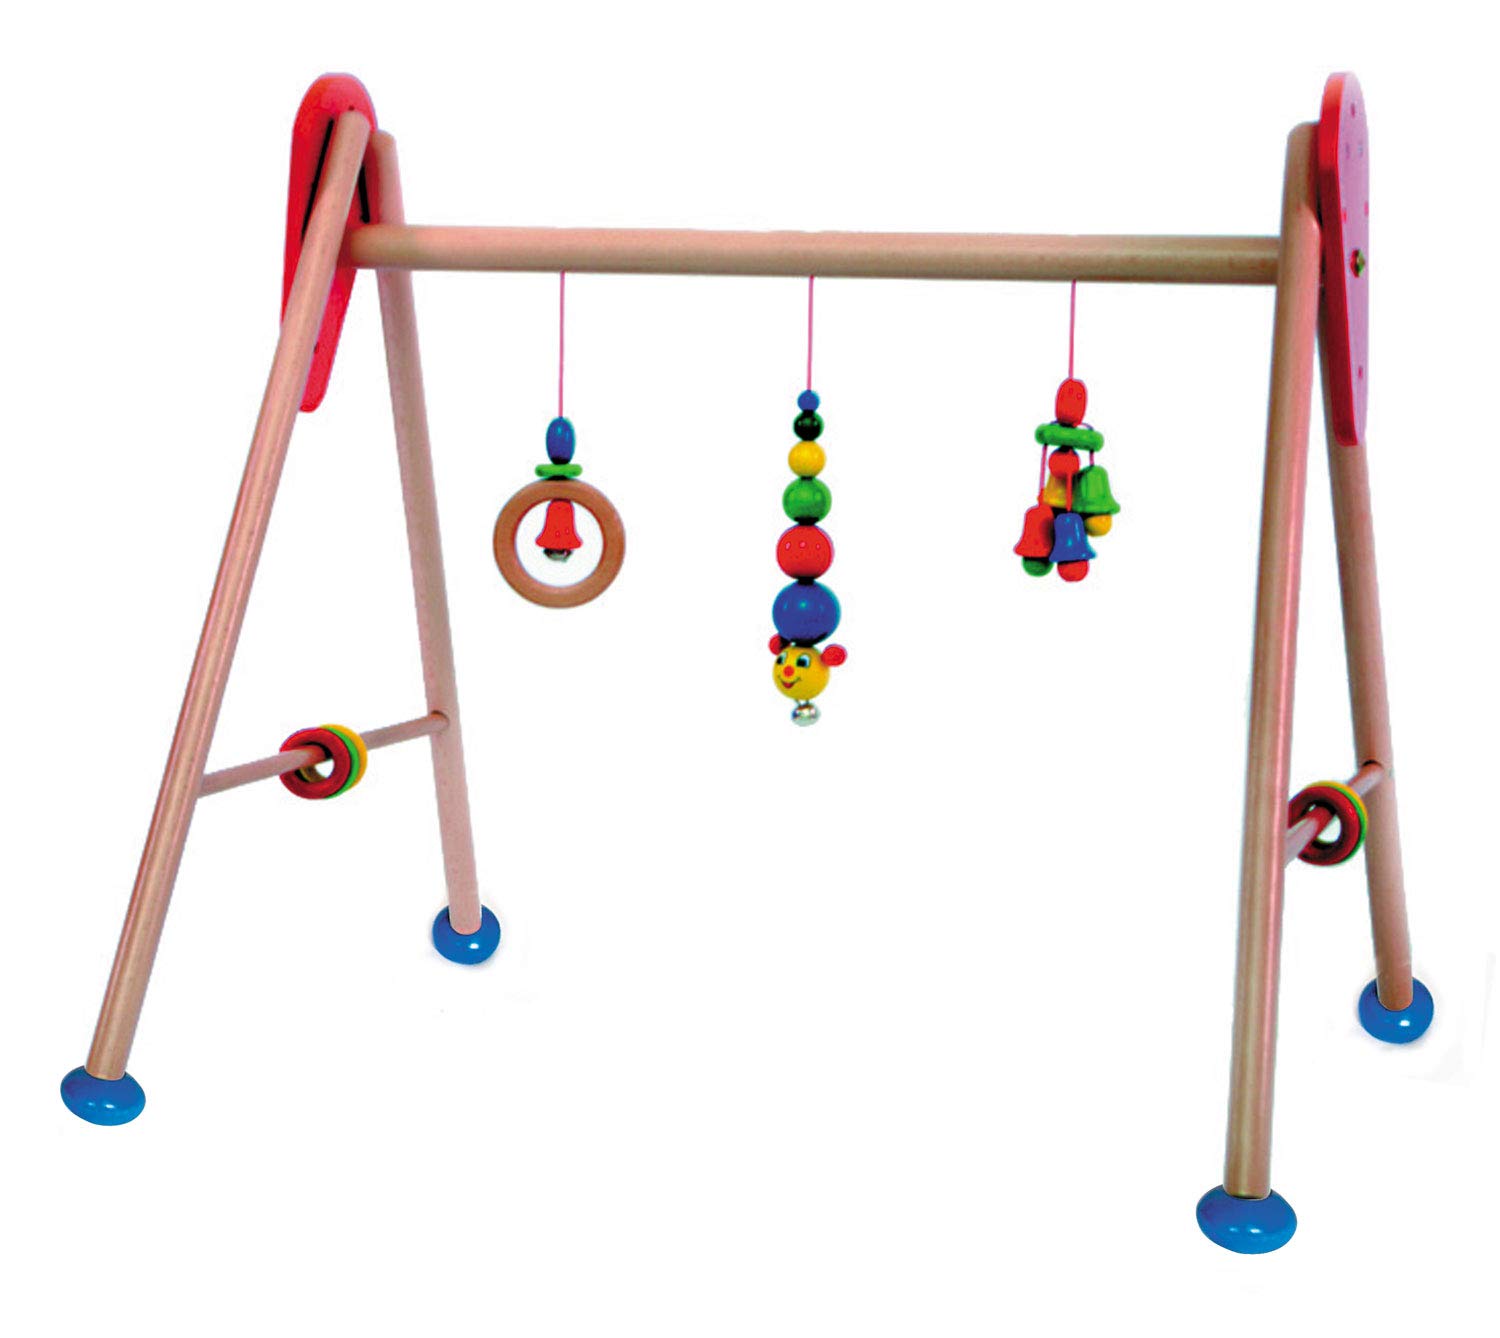 Hess Holzspielzeug 13321 - Spielgerät aus Holz, Serie Raupe, für Babys, handgefertigter Spielbogen mit farbenfrohen Figuren und Rasseln, ca. 62 x 55 x 50 cm